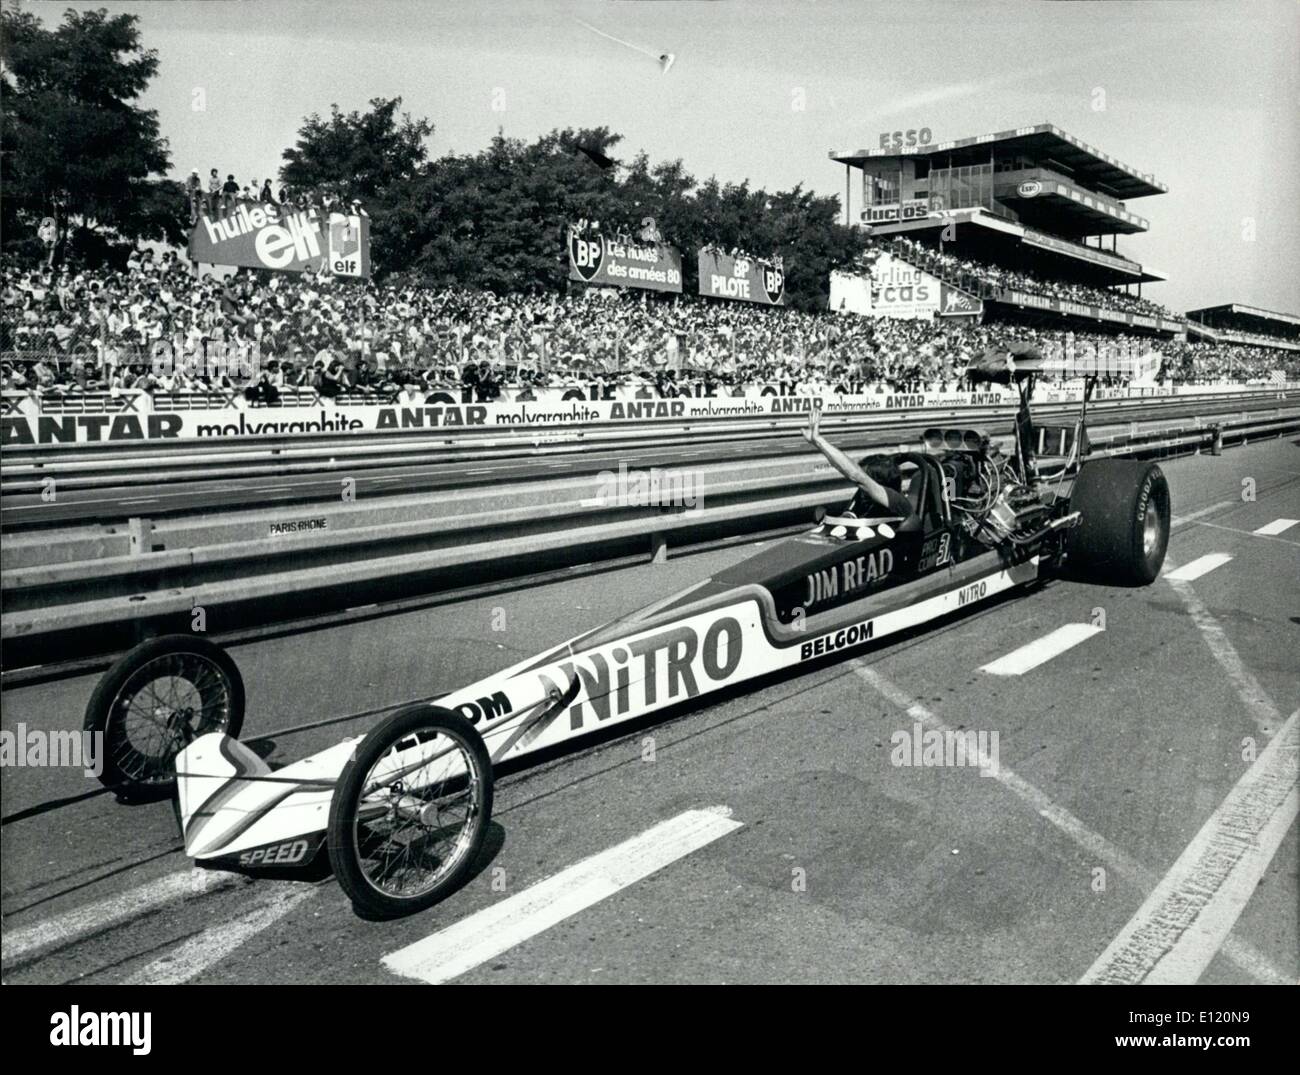 Sett. 07, 1981 - Jim leggere vince la 24 Ore di Le Mans Drag Race Foto Stock